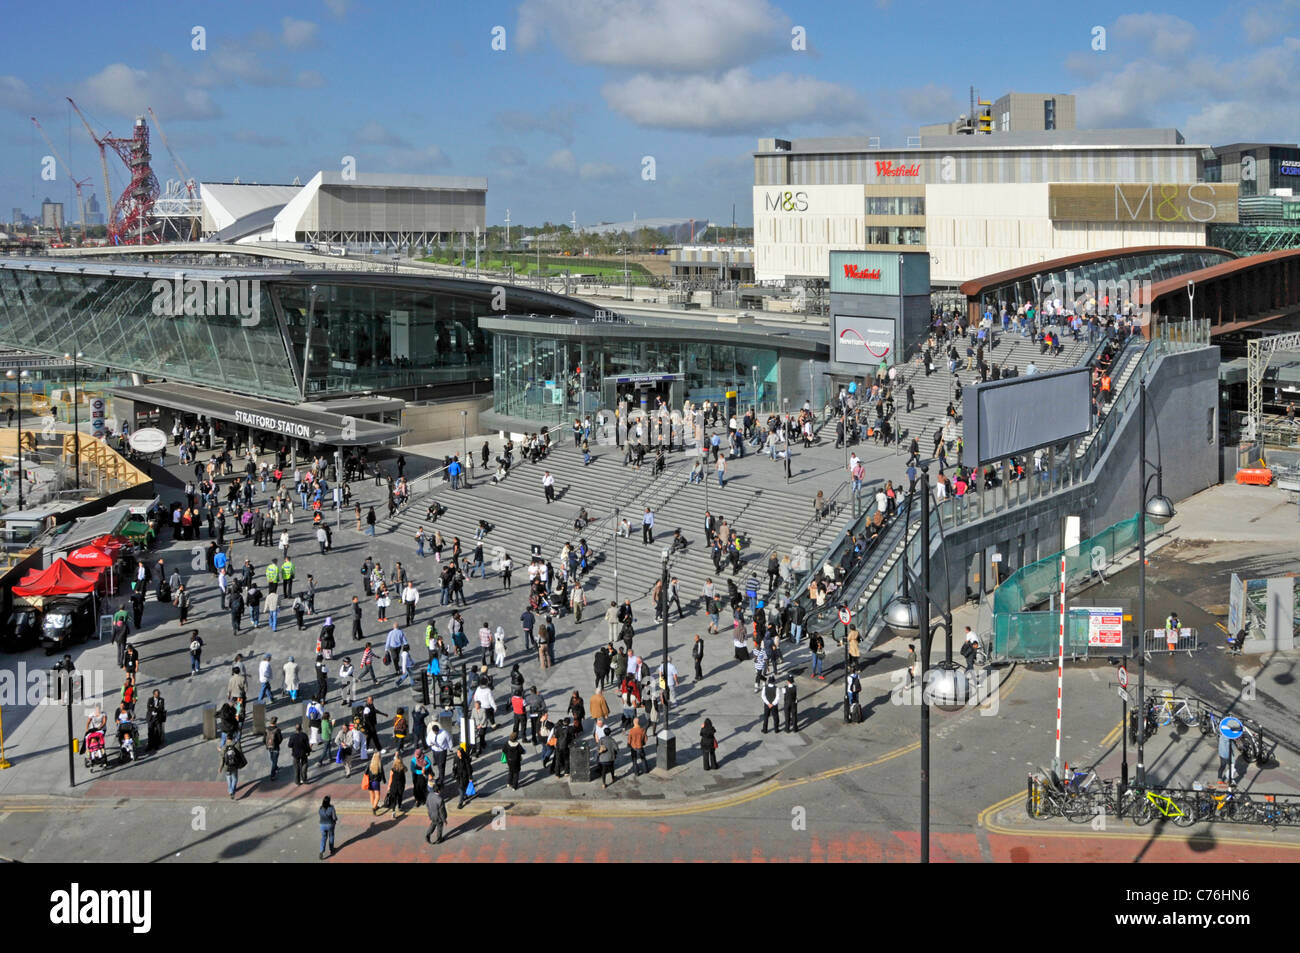 Vue de dessus les gens dans l'état occupé scène de rue de la gare de Stratford et le centre commercial de Westfield à Londres 2012 sites du Parc olympique au-delà de Newham UK Banque D'Images